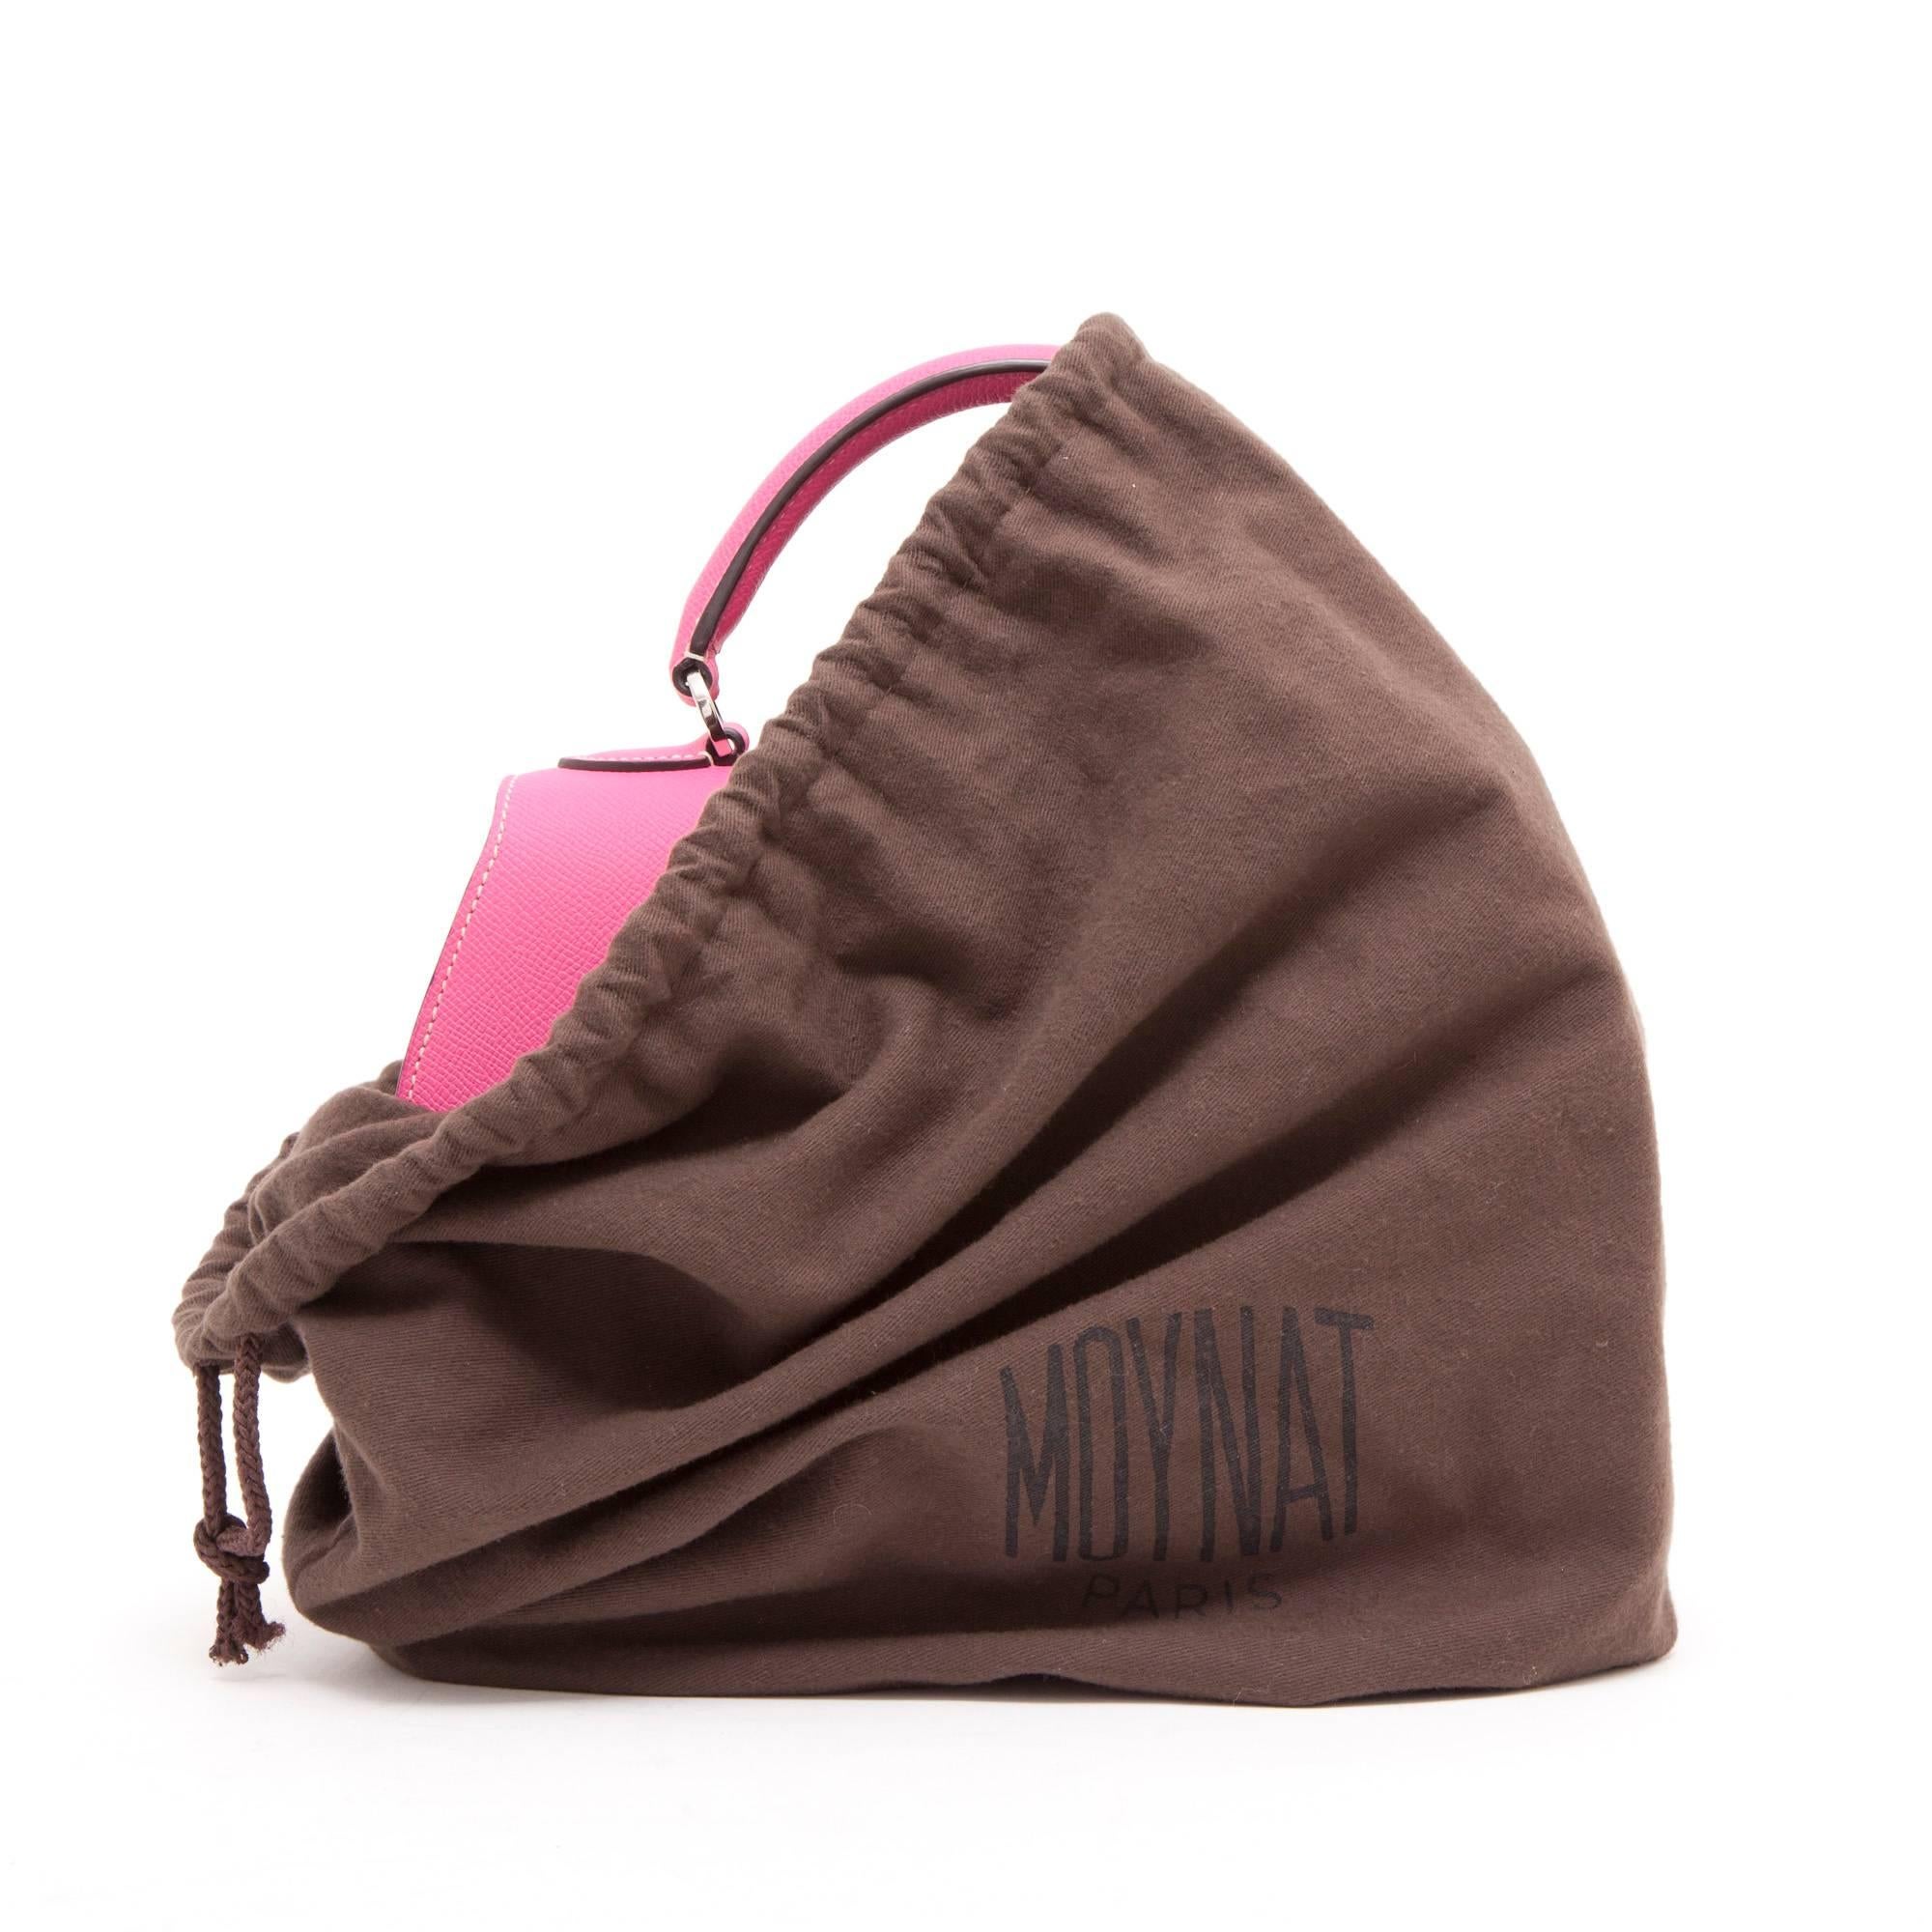 MOYNAT Bag 'Rejane' Model in Candy Pink Leather 1